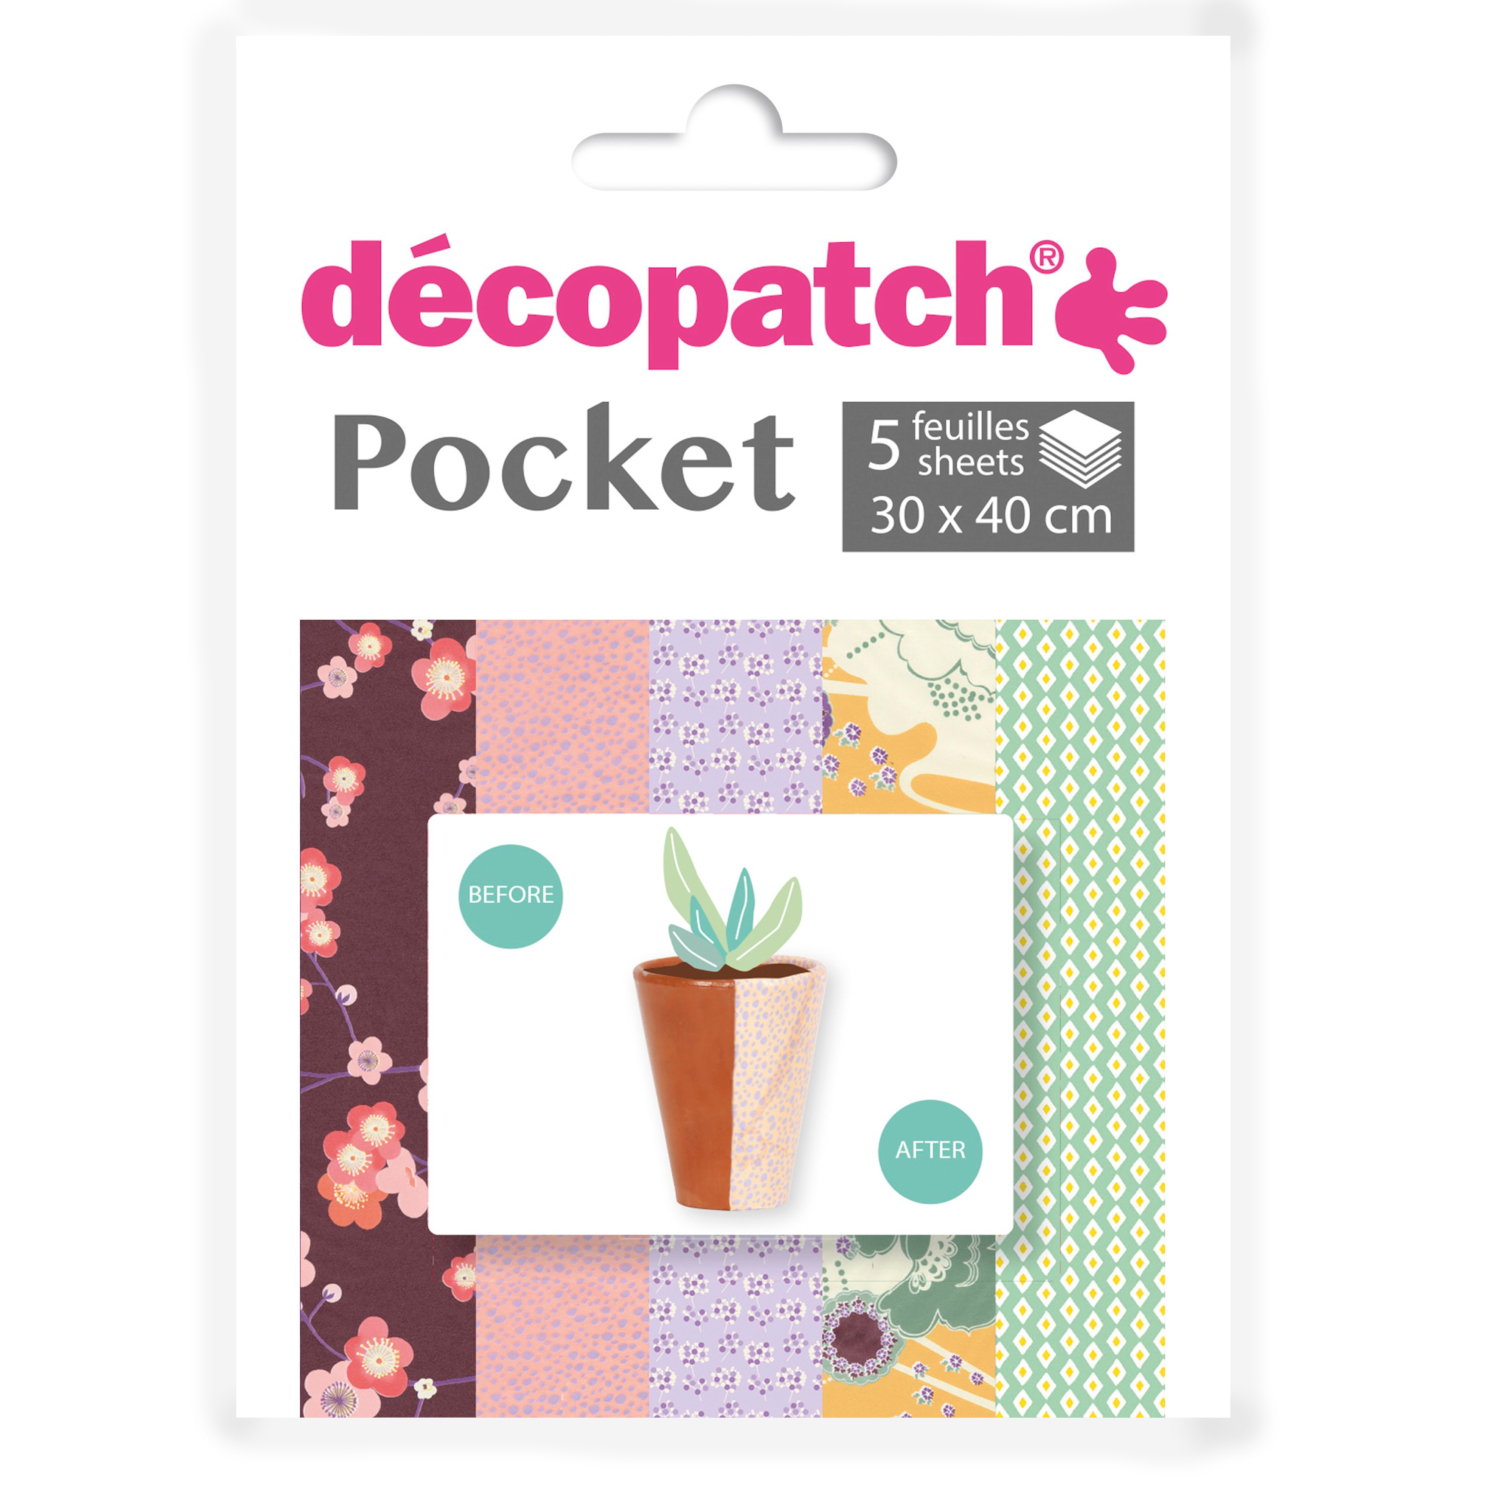 NEU Decoupage- / Decopatch-Papier Pocket-Sortierung, 5 Bogen 30 x 40 cm, Motive: 707, 840, 740, 708, 734